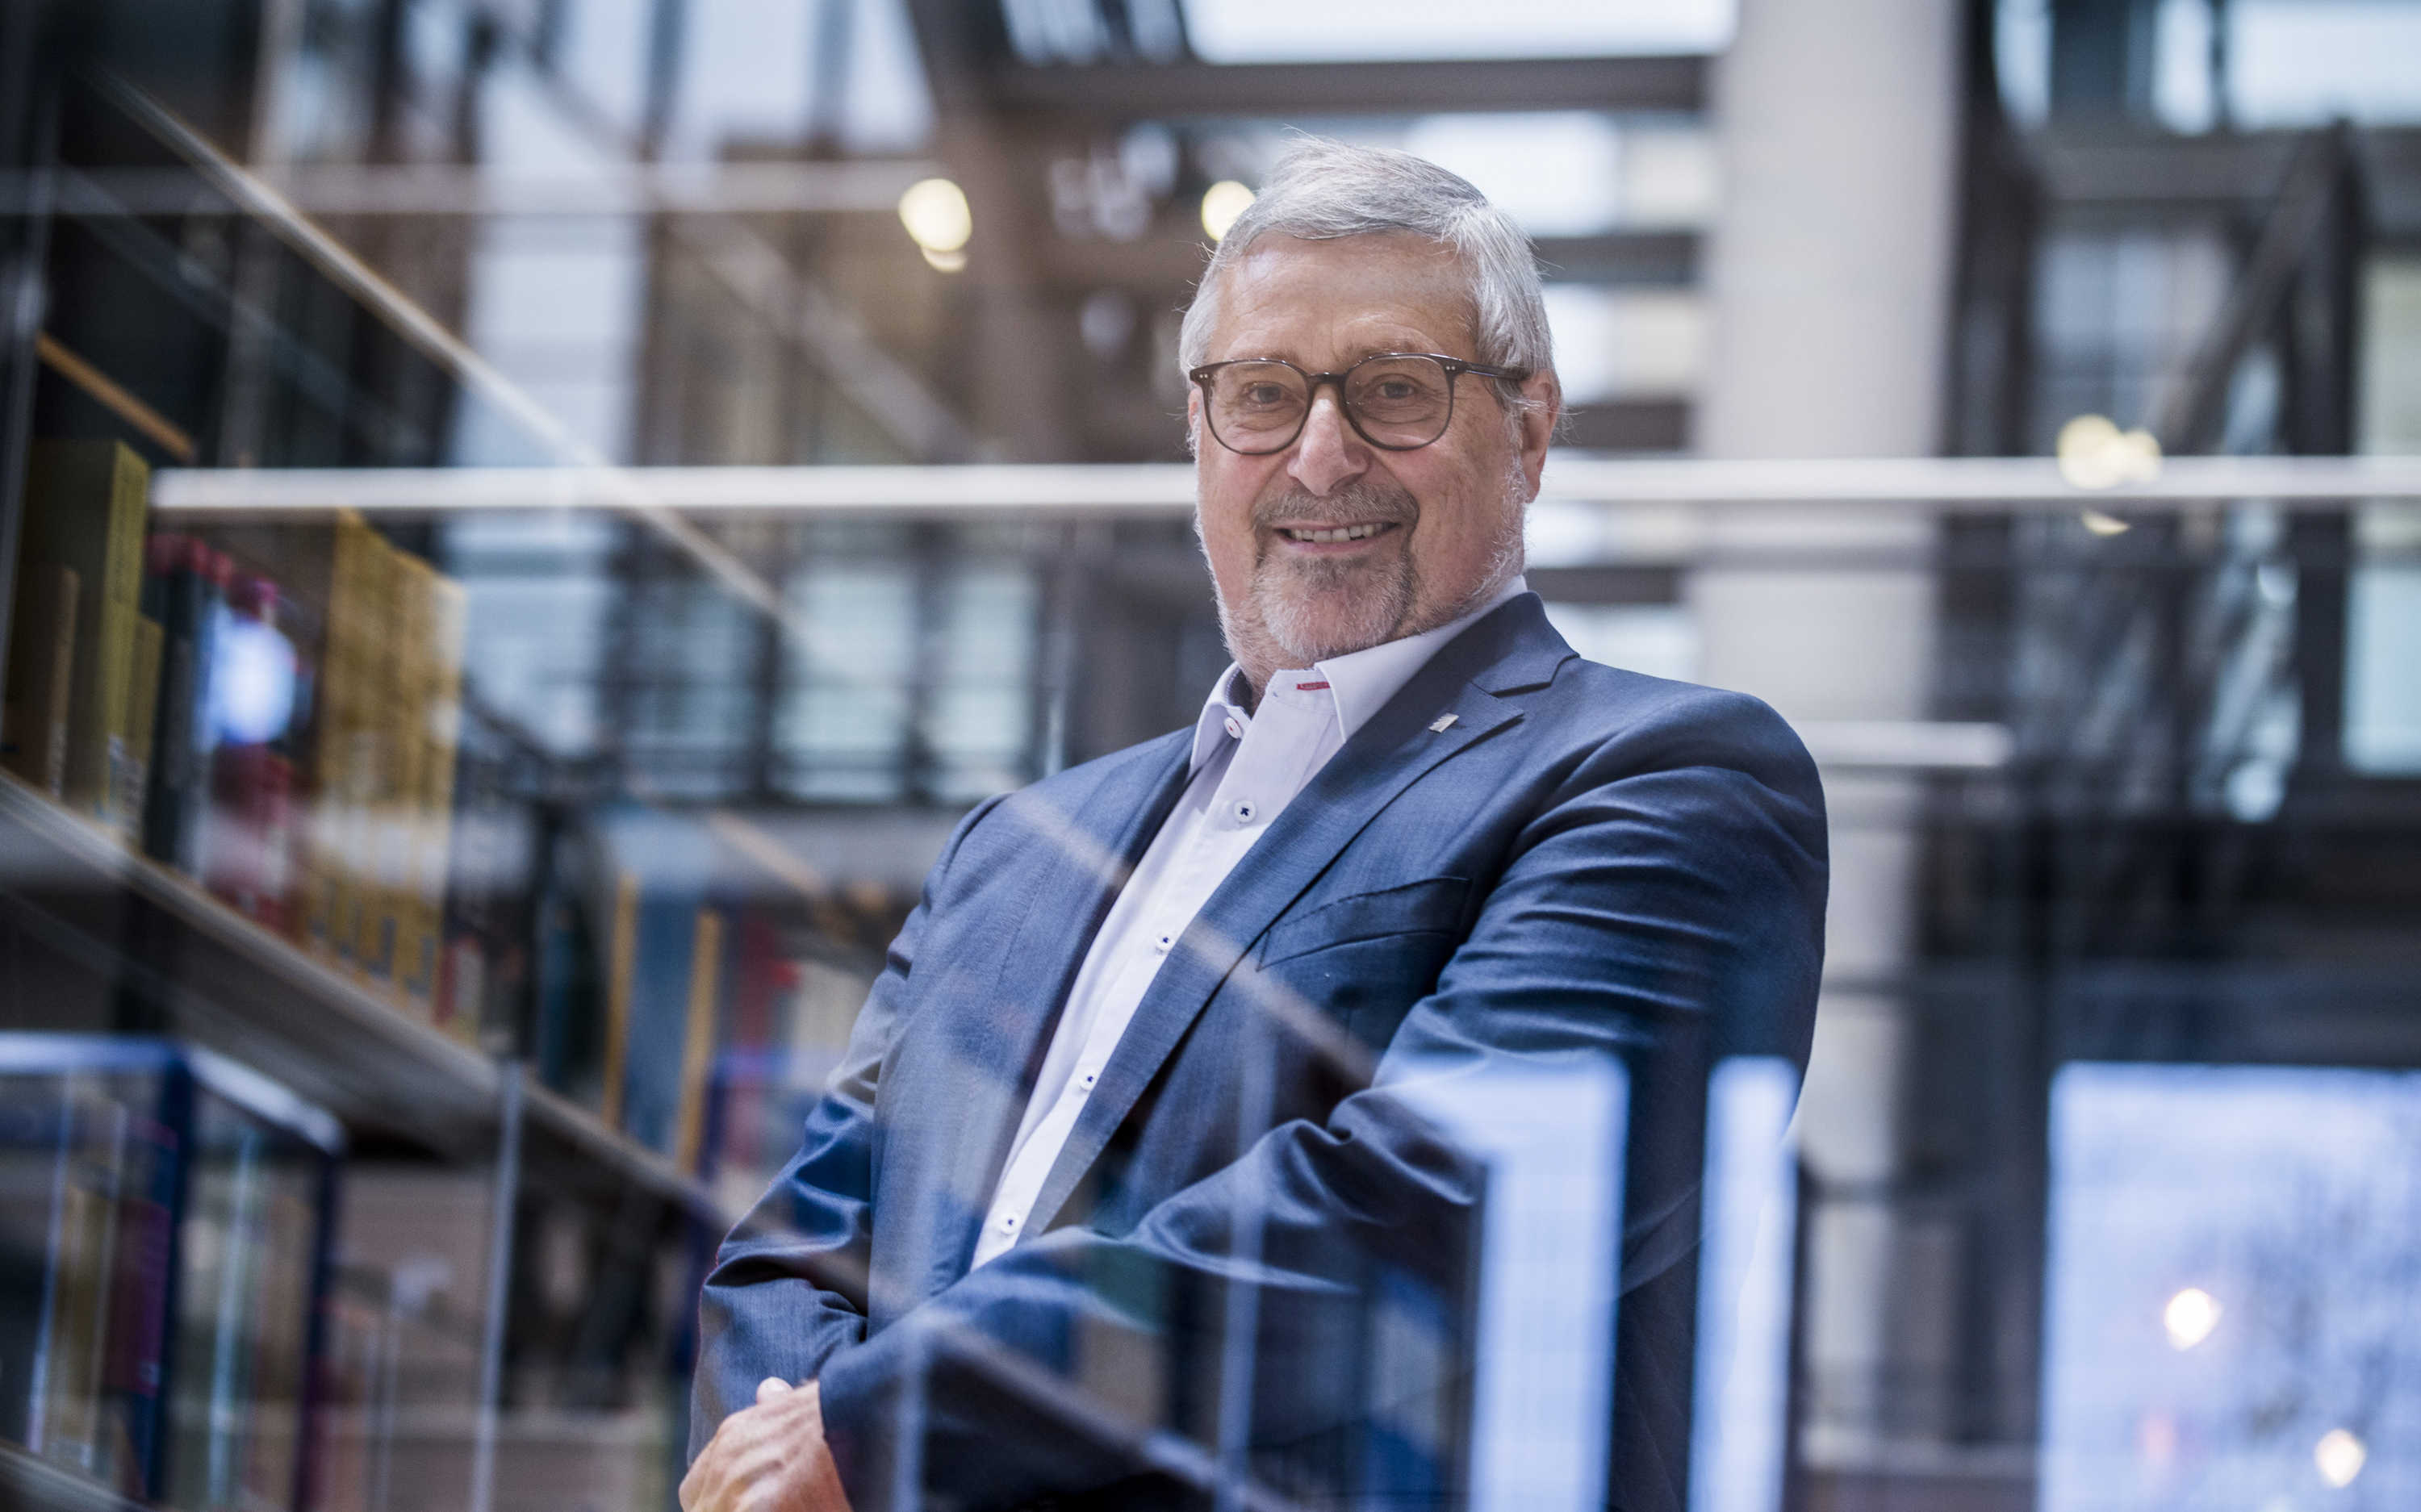 Prof. Eckhard Beyer hat das Fraunhofer IWS Dresden in den vergangenen 20 Jahren als Institutsleiter geprägt und zu einem international renommierten Kompetenzzentrum für Lasermaterialbearbeitung sowie für Oberflächen- und Beschichtungstechnik ausgebaut.